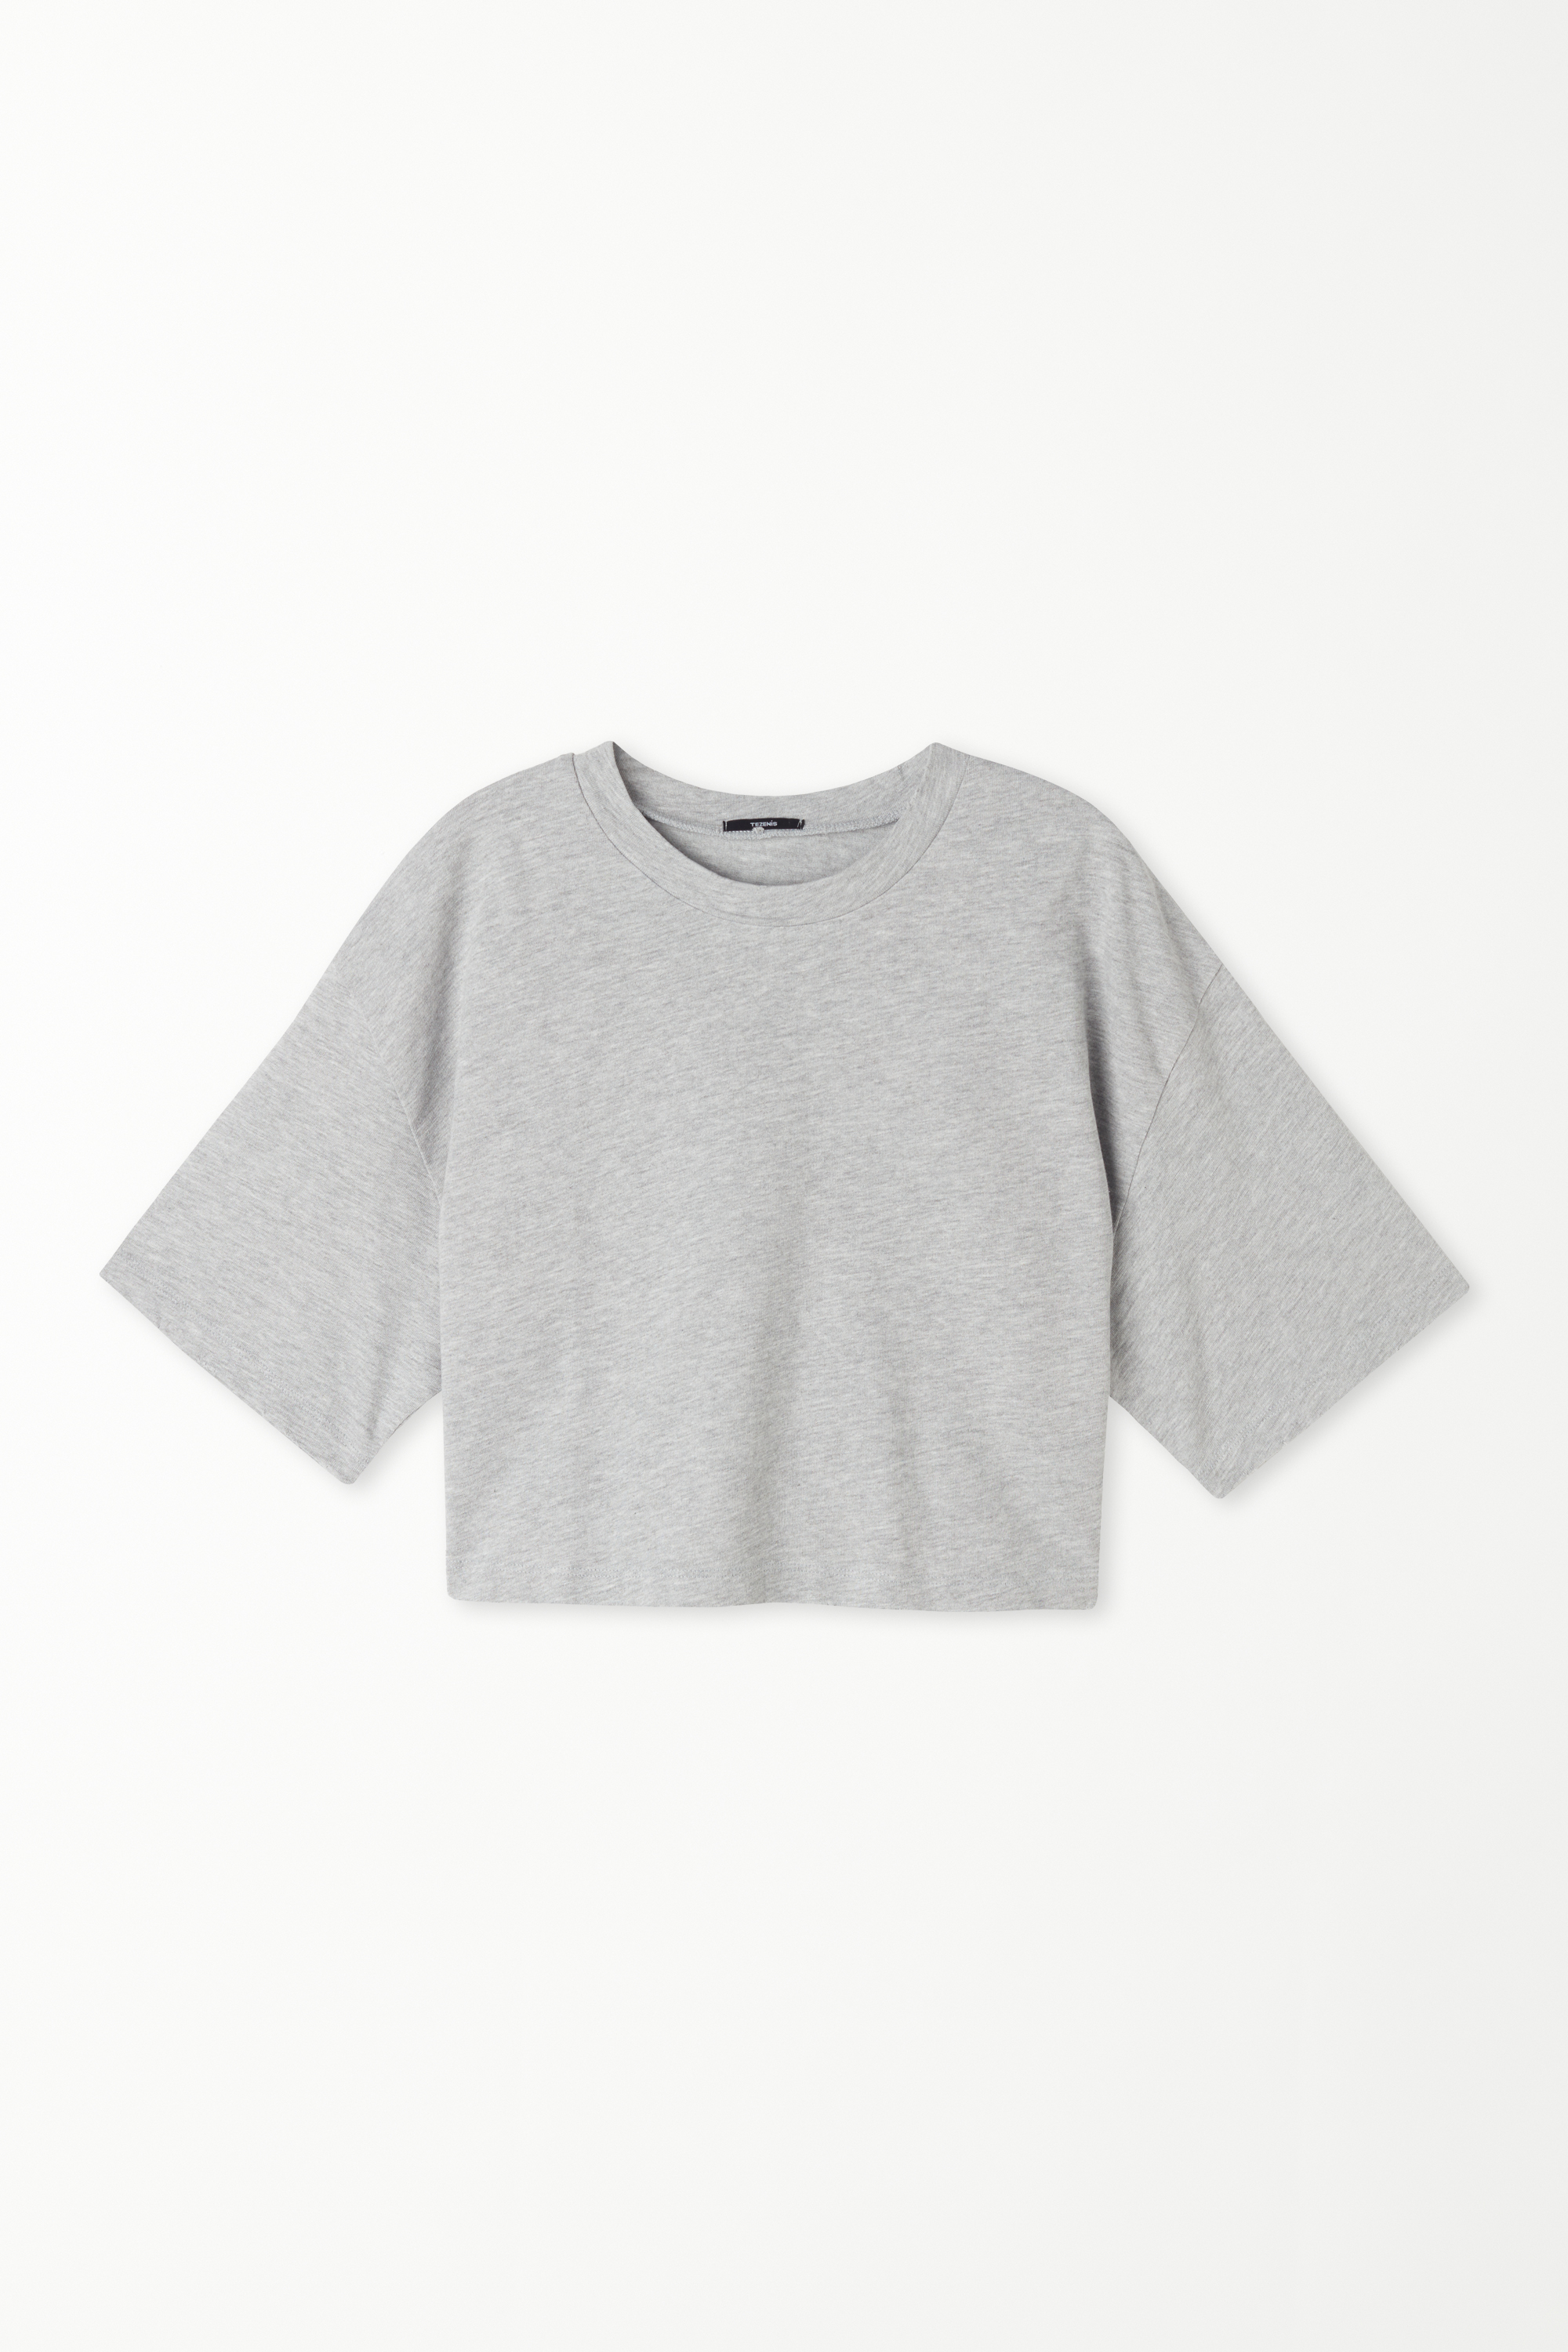 Short Cotton Round-Neckline T-Shirt